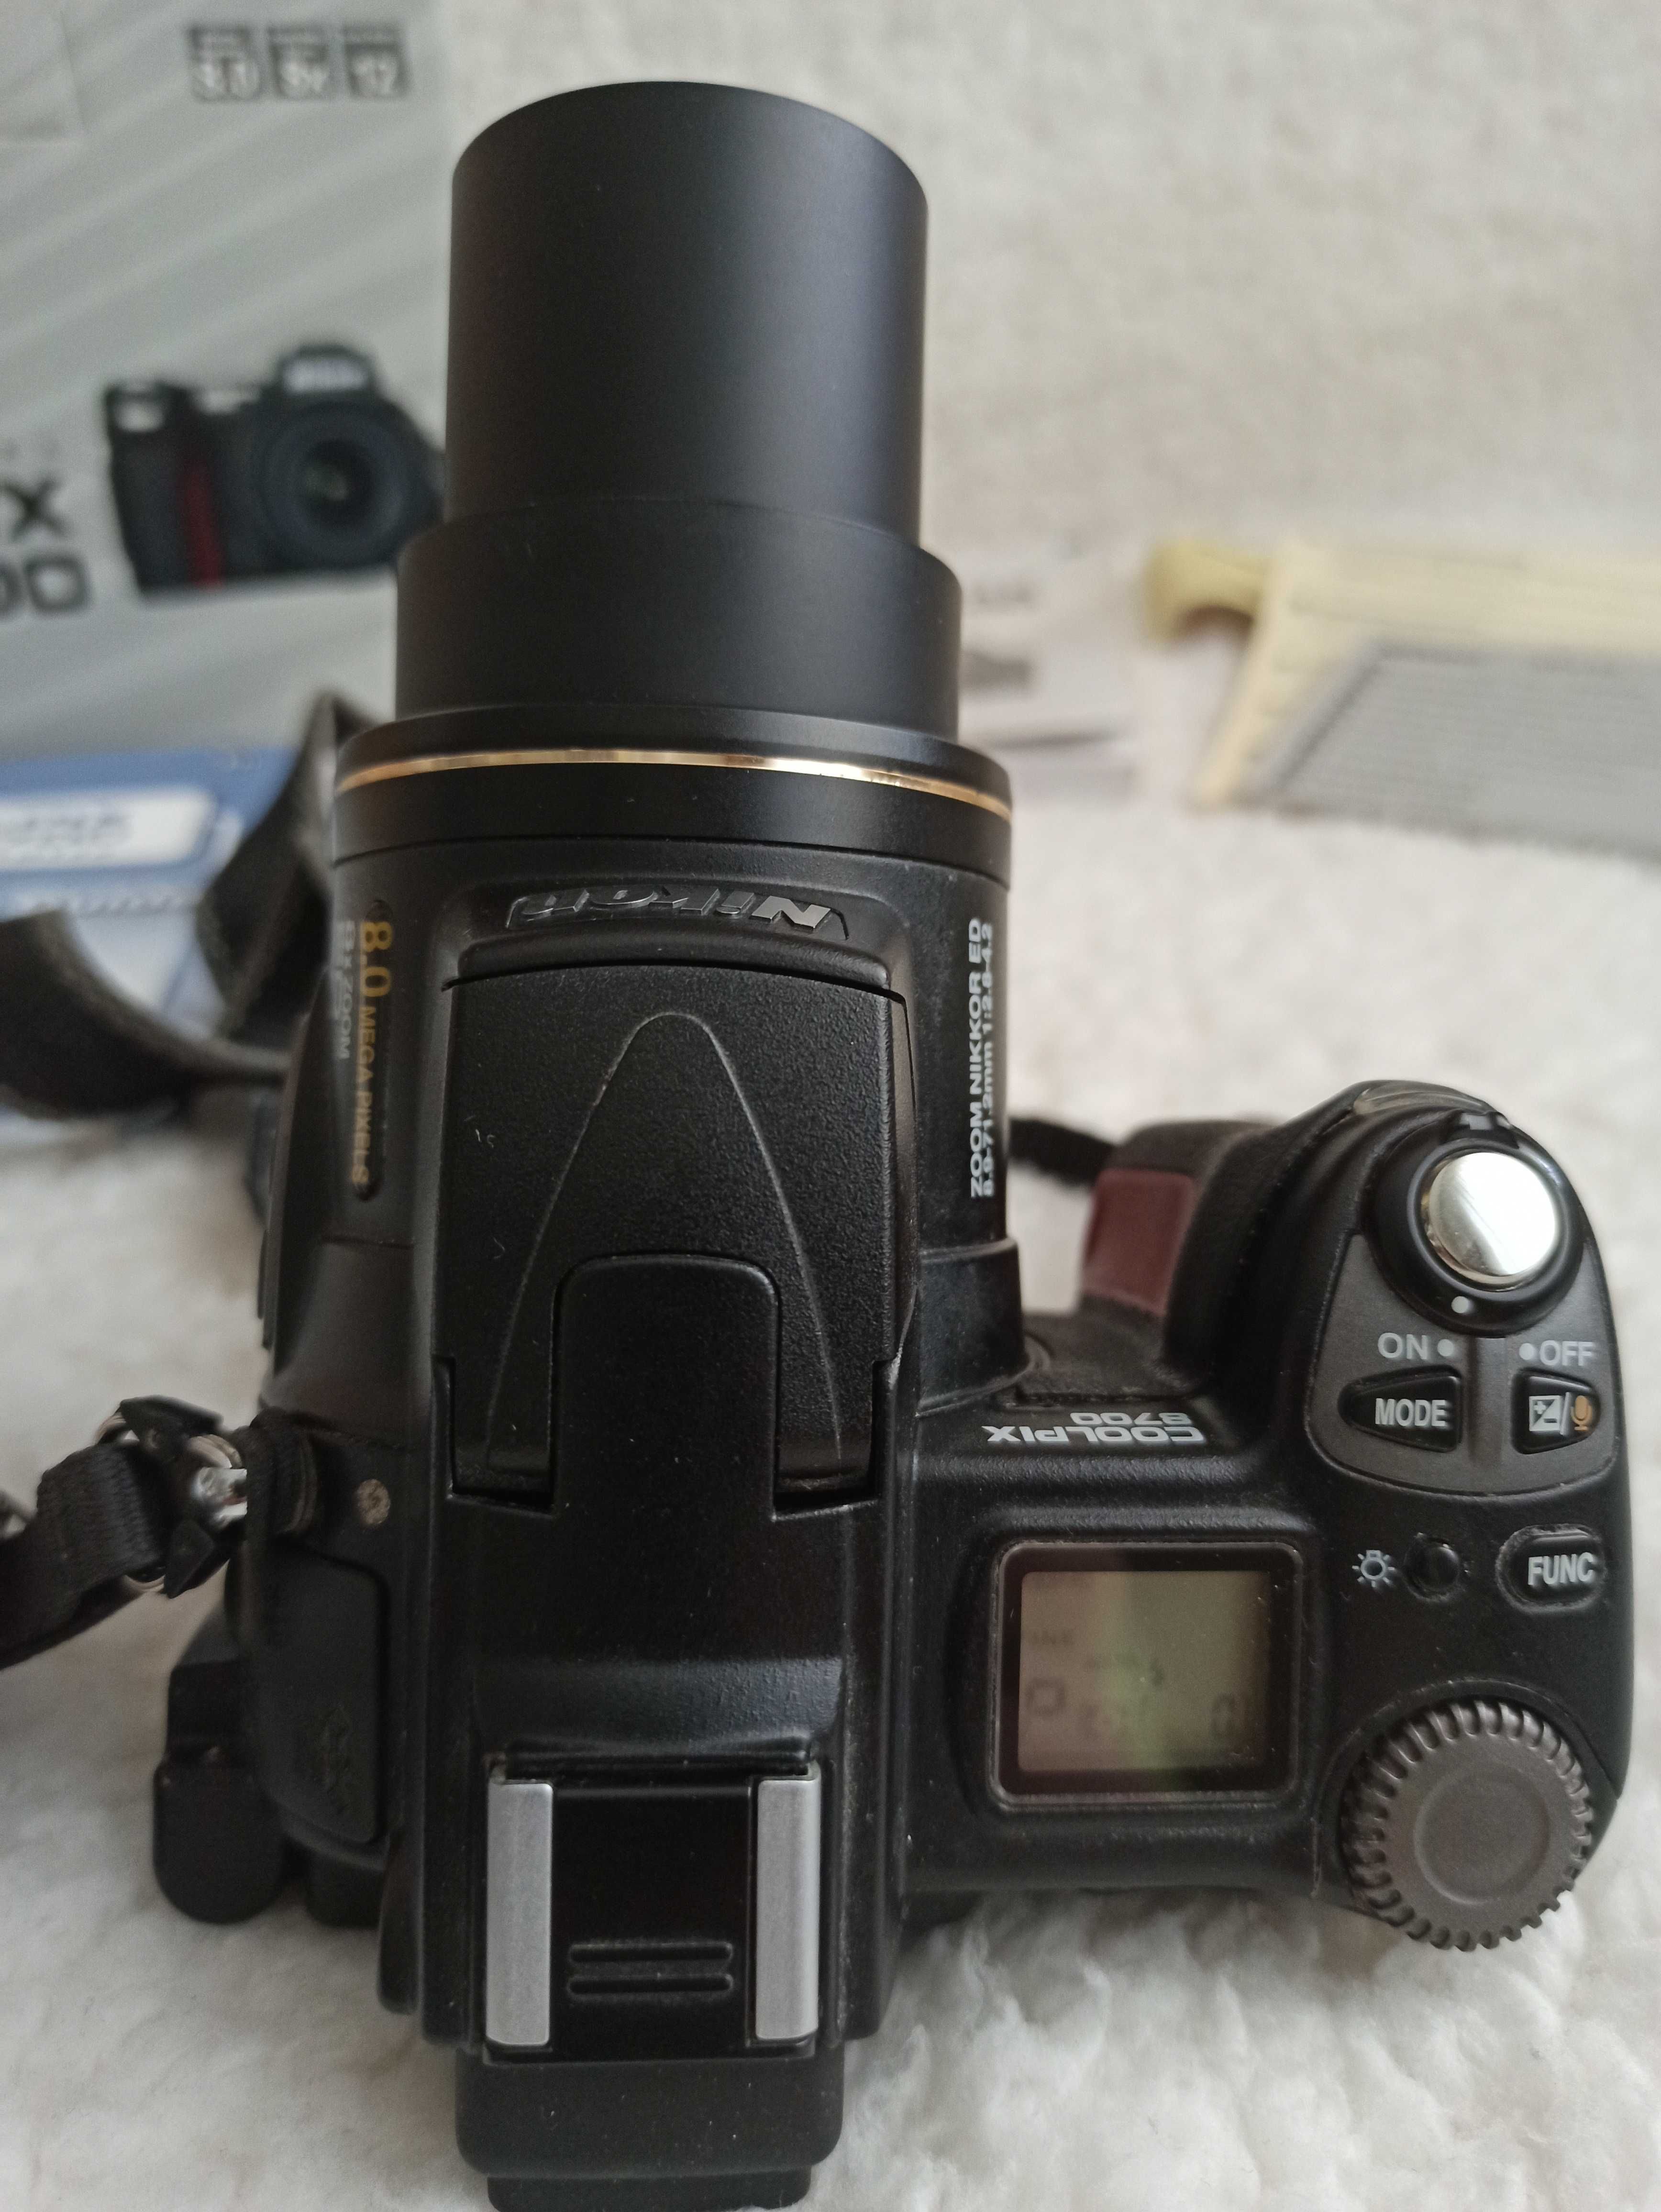 Aparat Nikon Coolpix 8700 uszkodzony